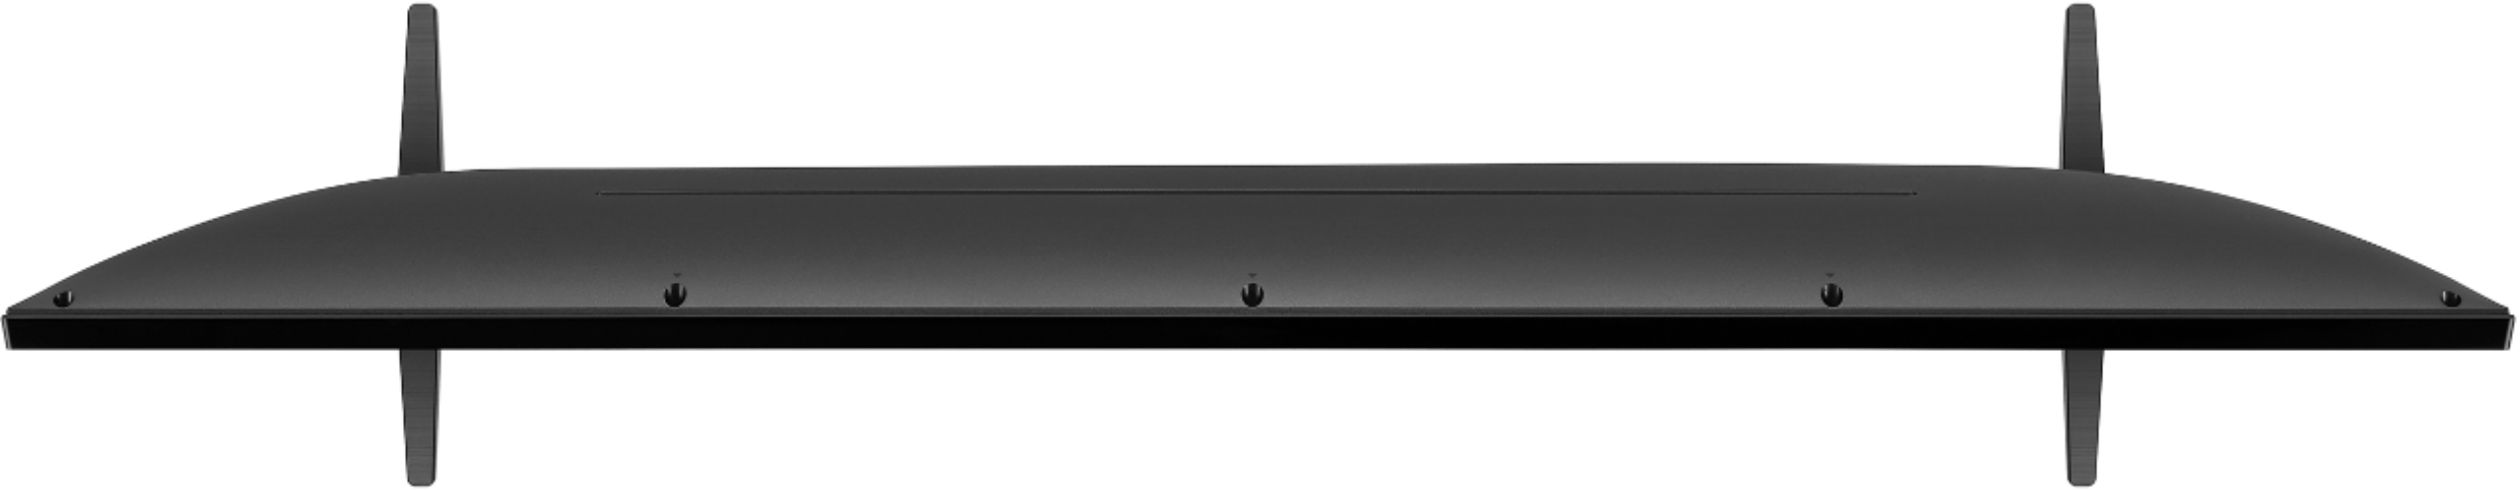 Best Buy: LG 50 Class UN7300 Series LED 4K UHD Smart webOS TV 50UN7300PUF